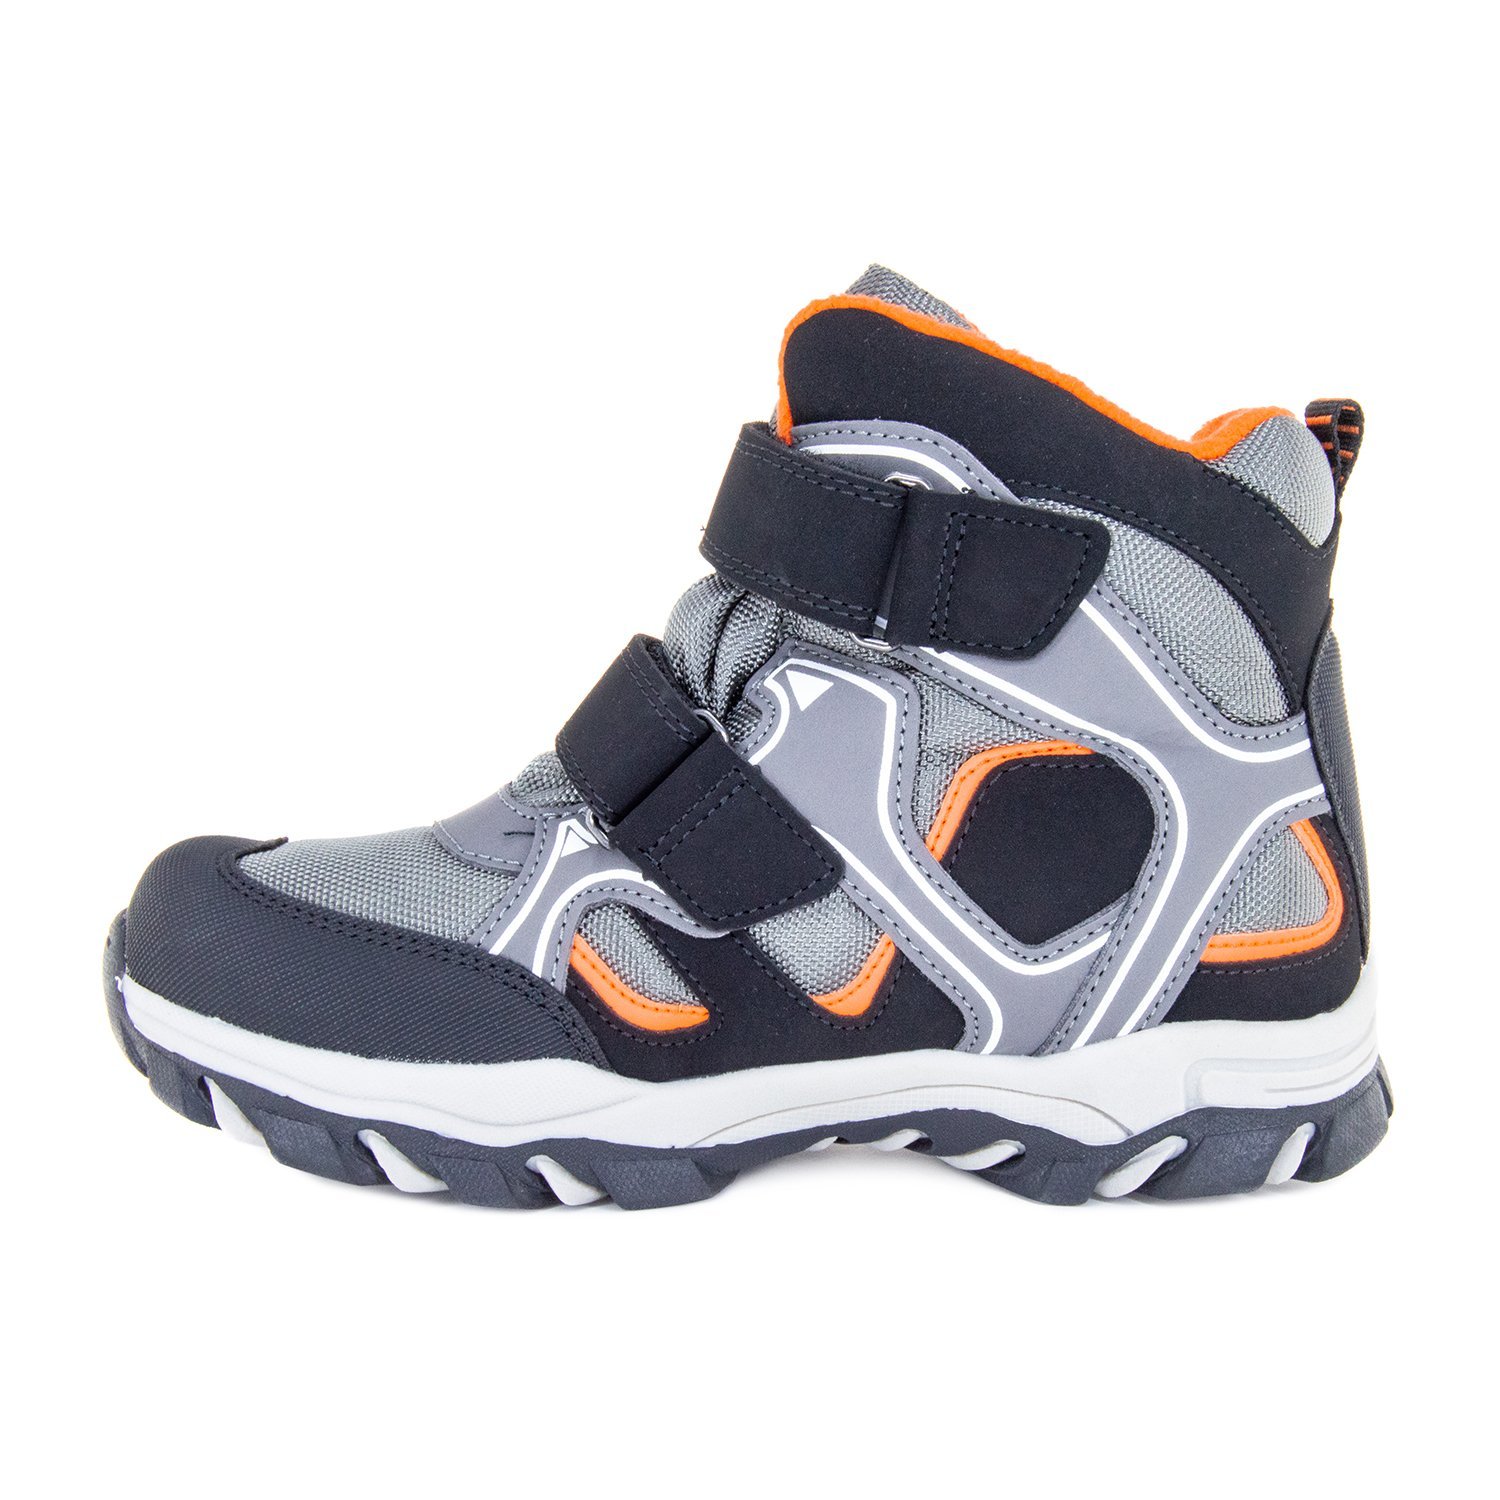 Детские ботинки ORTHOBOOM 81054-02 серо-черный с оранжевым